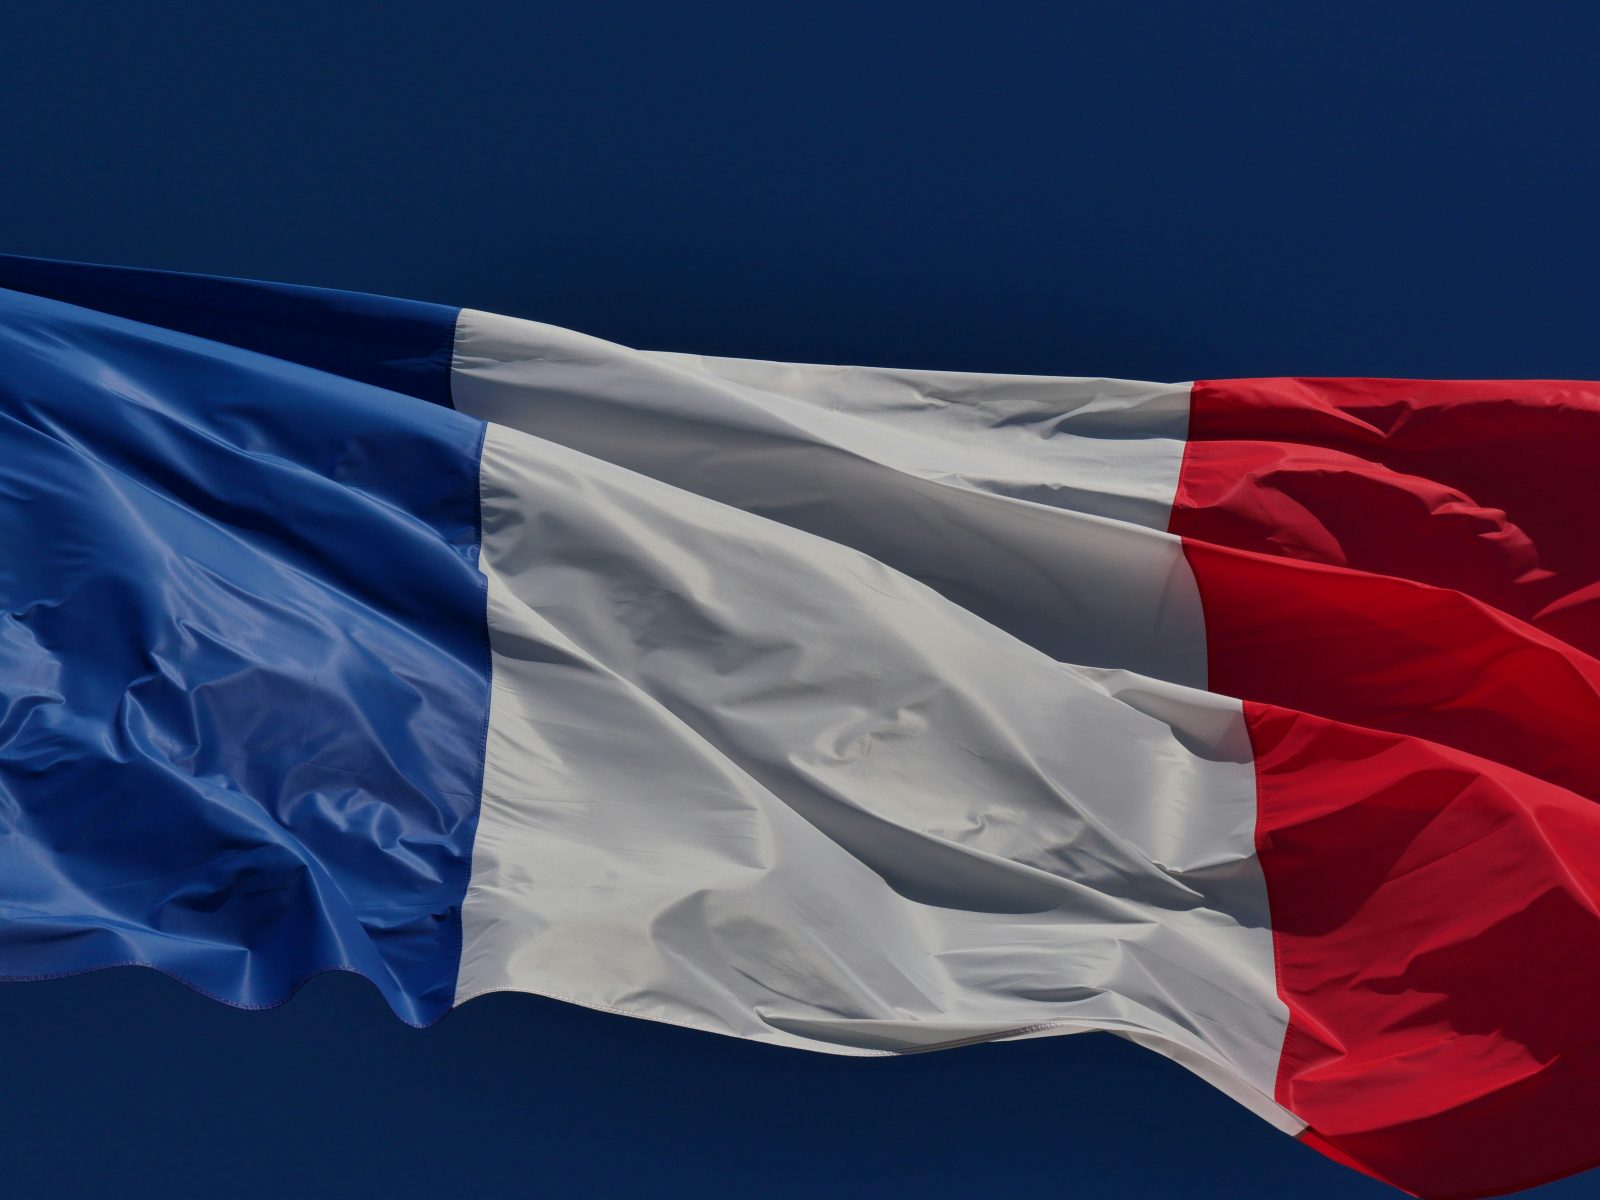 Alice & Bob è una delle 5 aziende francesi scelte per il programma PROQCIMA incentrato sulla sicurezza informatica francese.